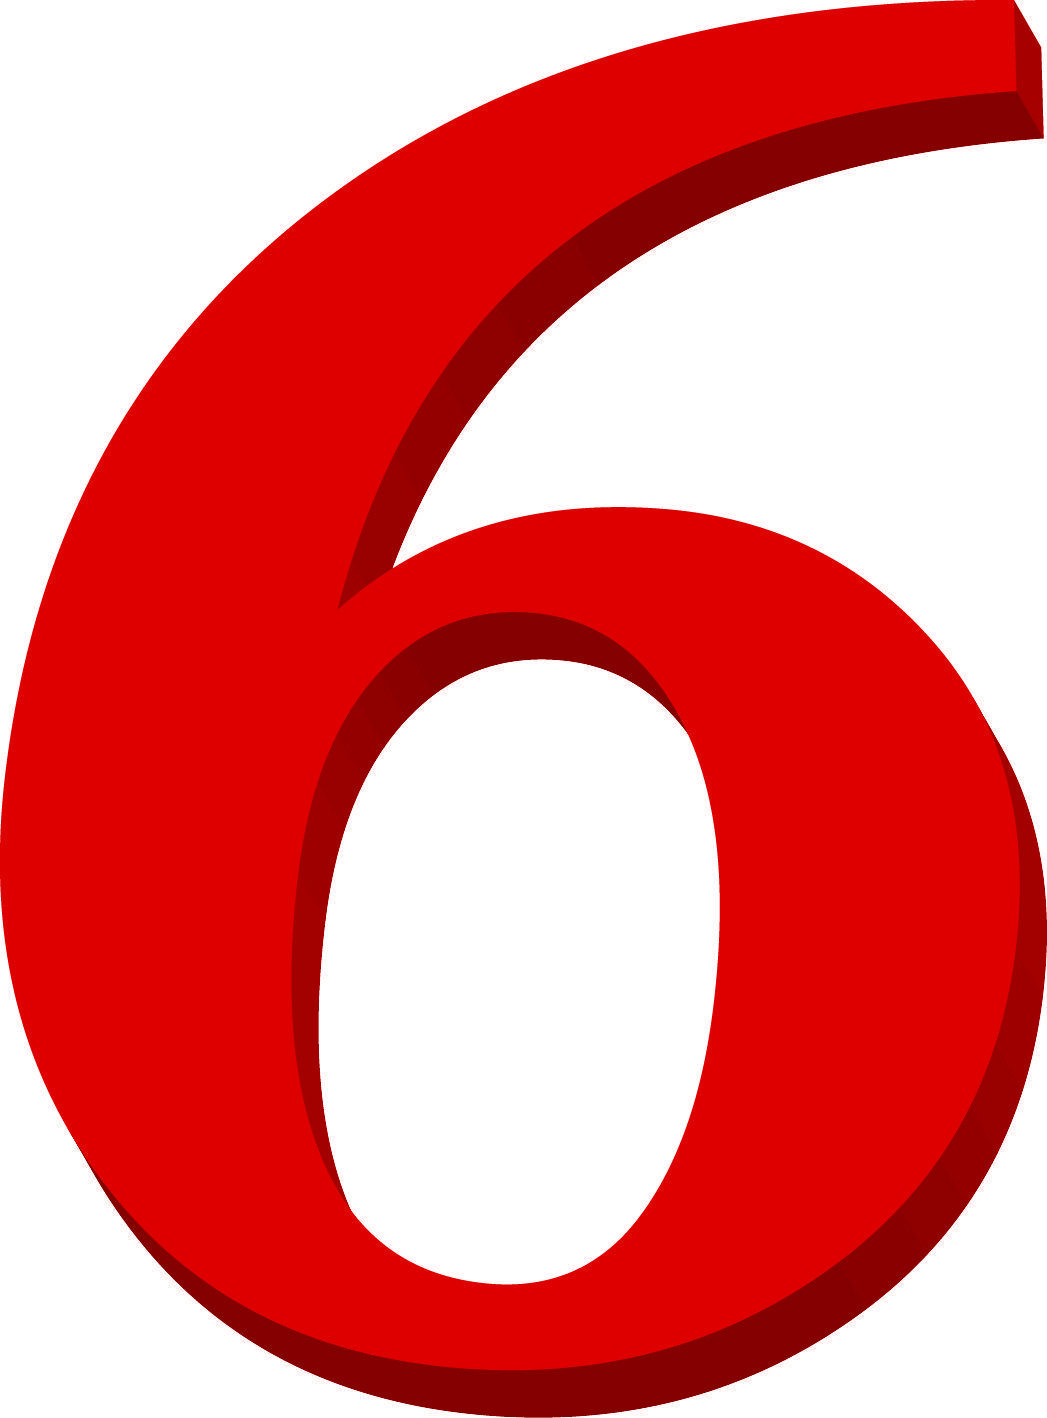 6 Red Circle Logo - Free 8188 6 red